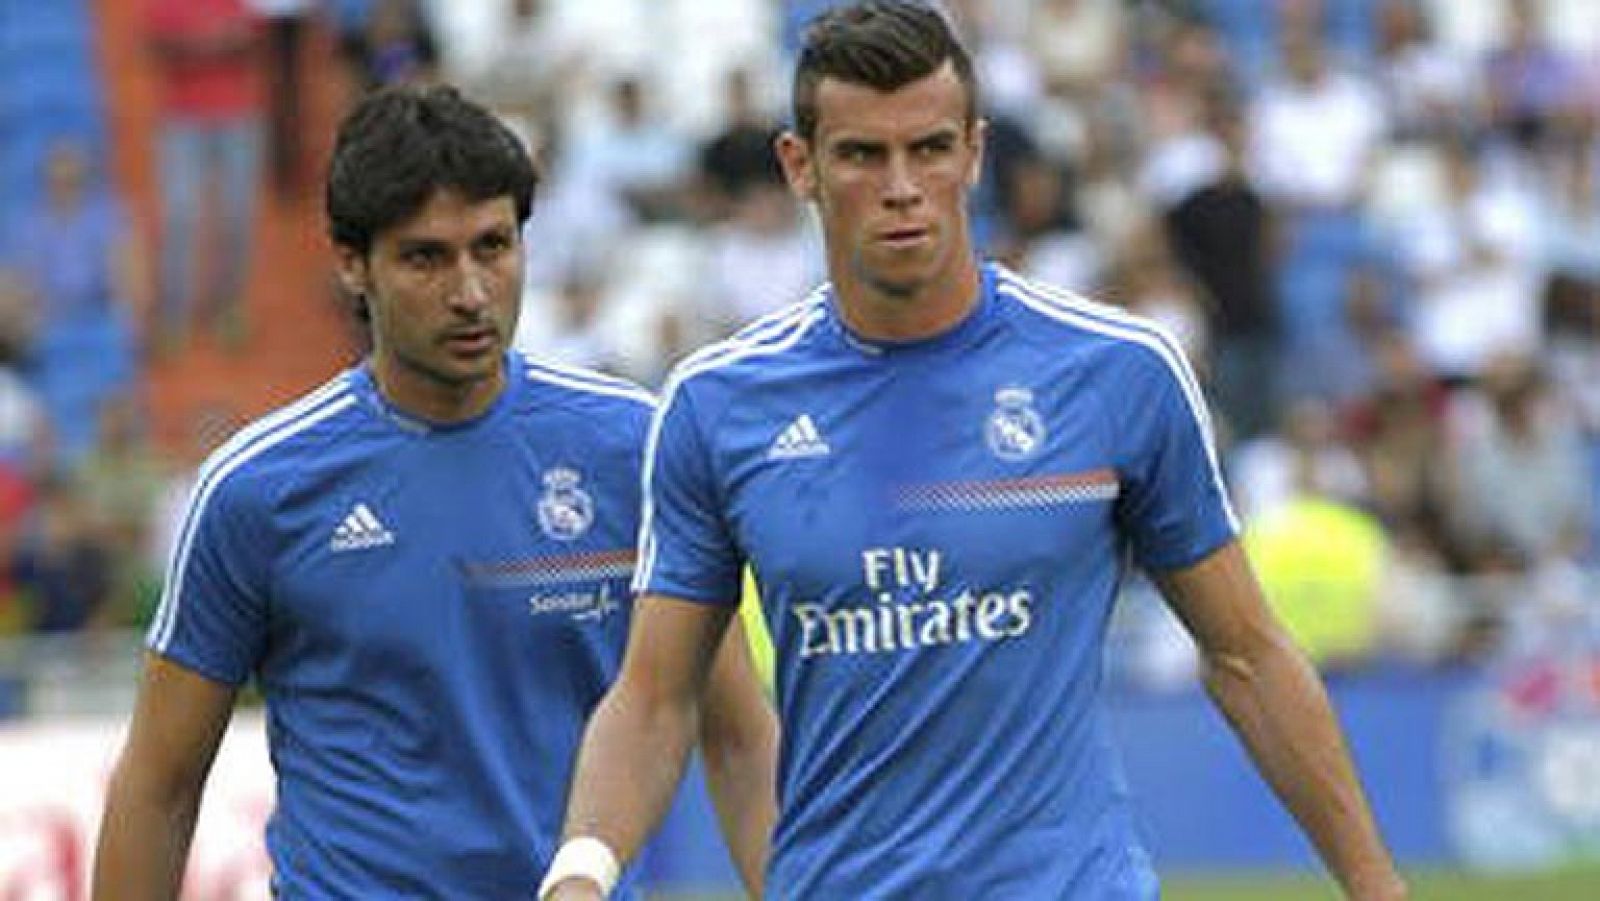 Al final la lesión de Bale se ha quedado en un susto para el Real Madrid. El galés no estará en el partido ante el Elche, pero apunta a titular de cara al derbi ante el Atlético de Madrid.